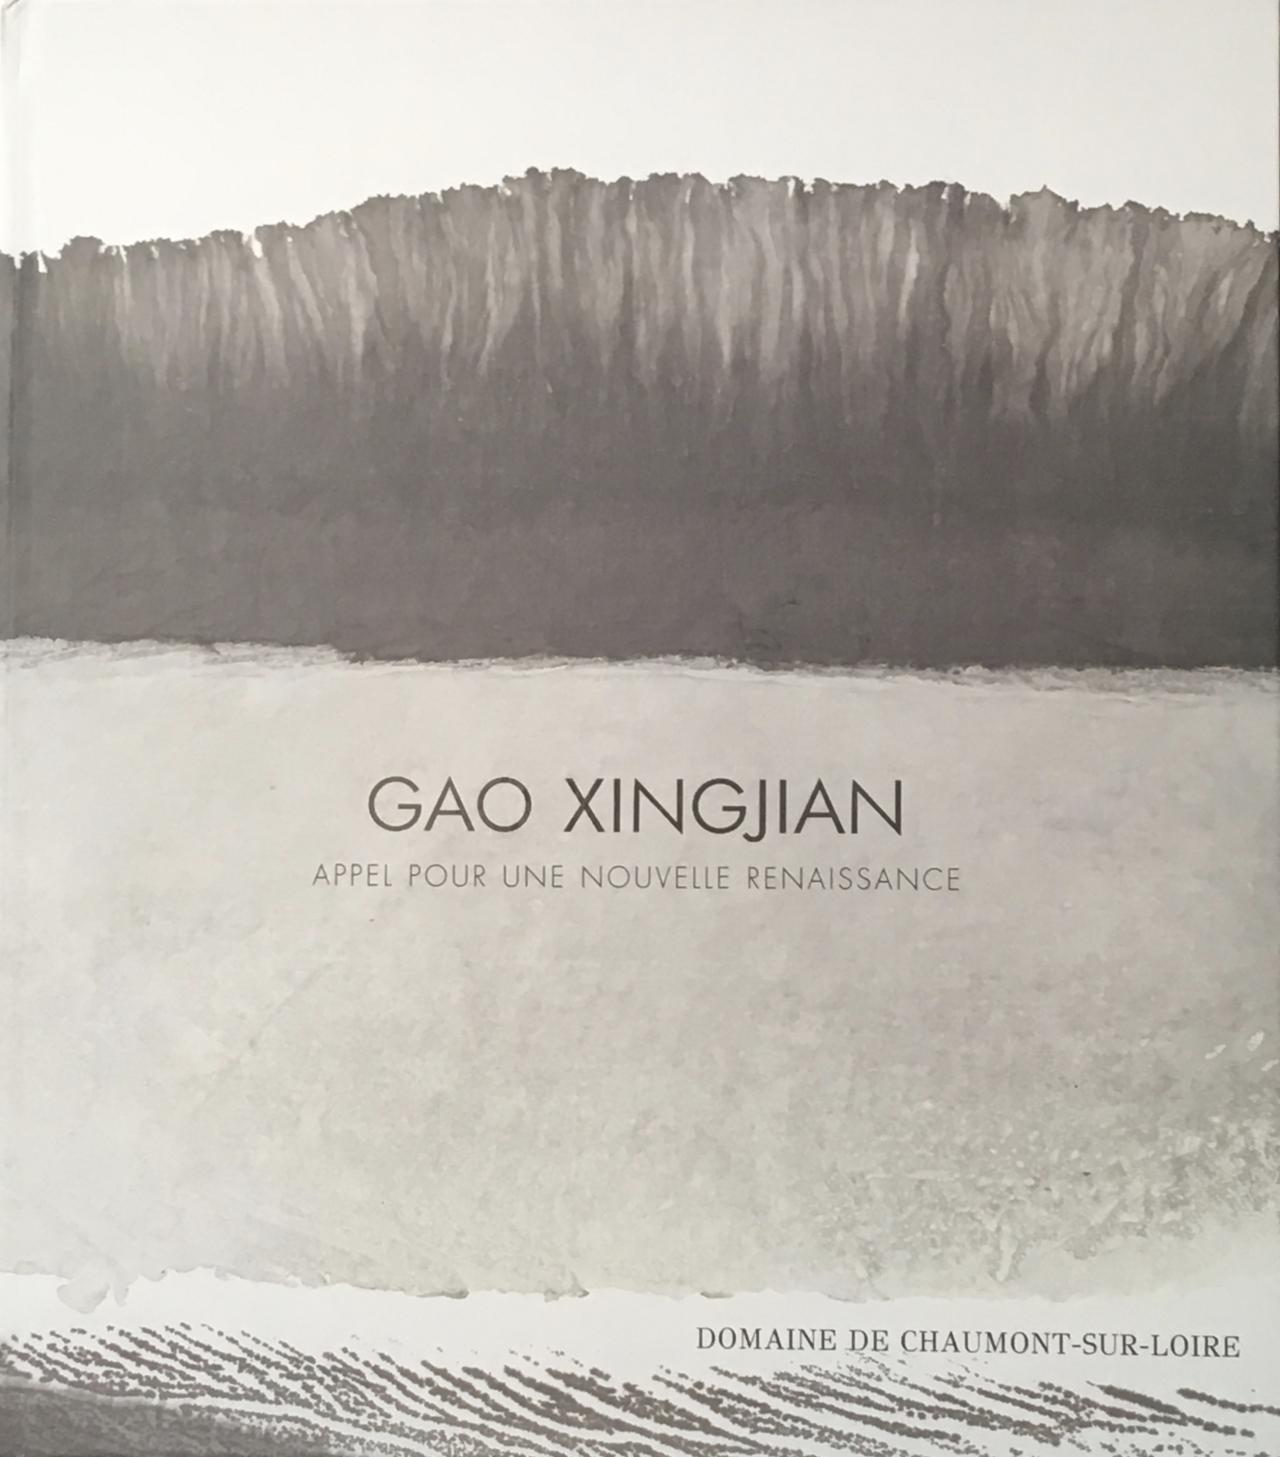 Gao Xingjian Appel pour une nouvelle renaissance exposition Domaine de Chaumont-sur-Loire